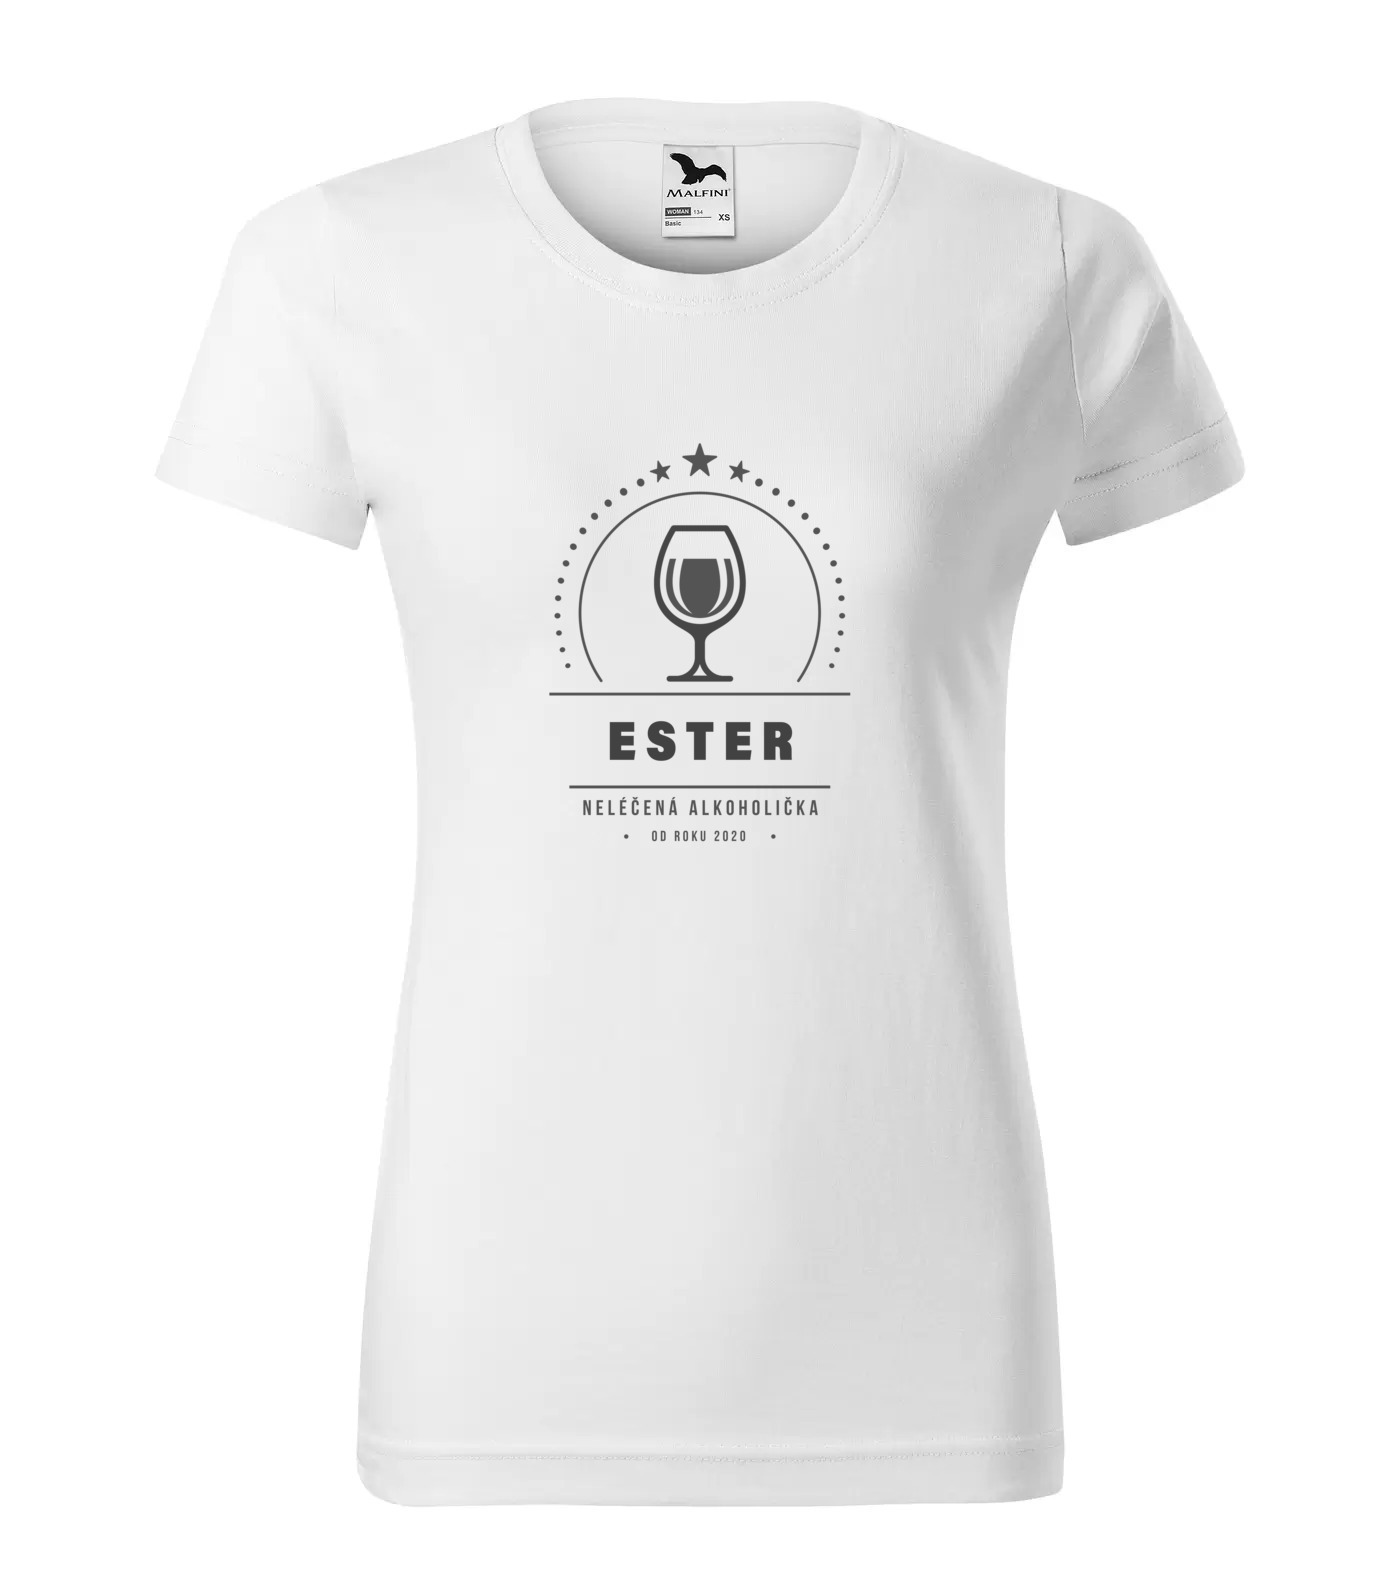 Tričko Alkoholička Ester